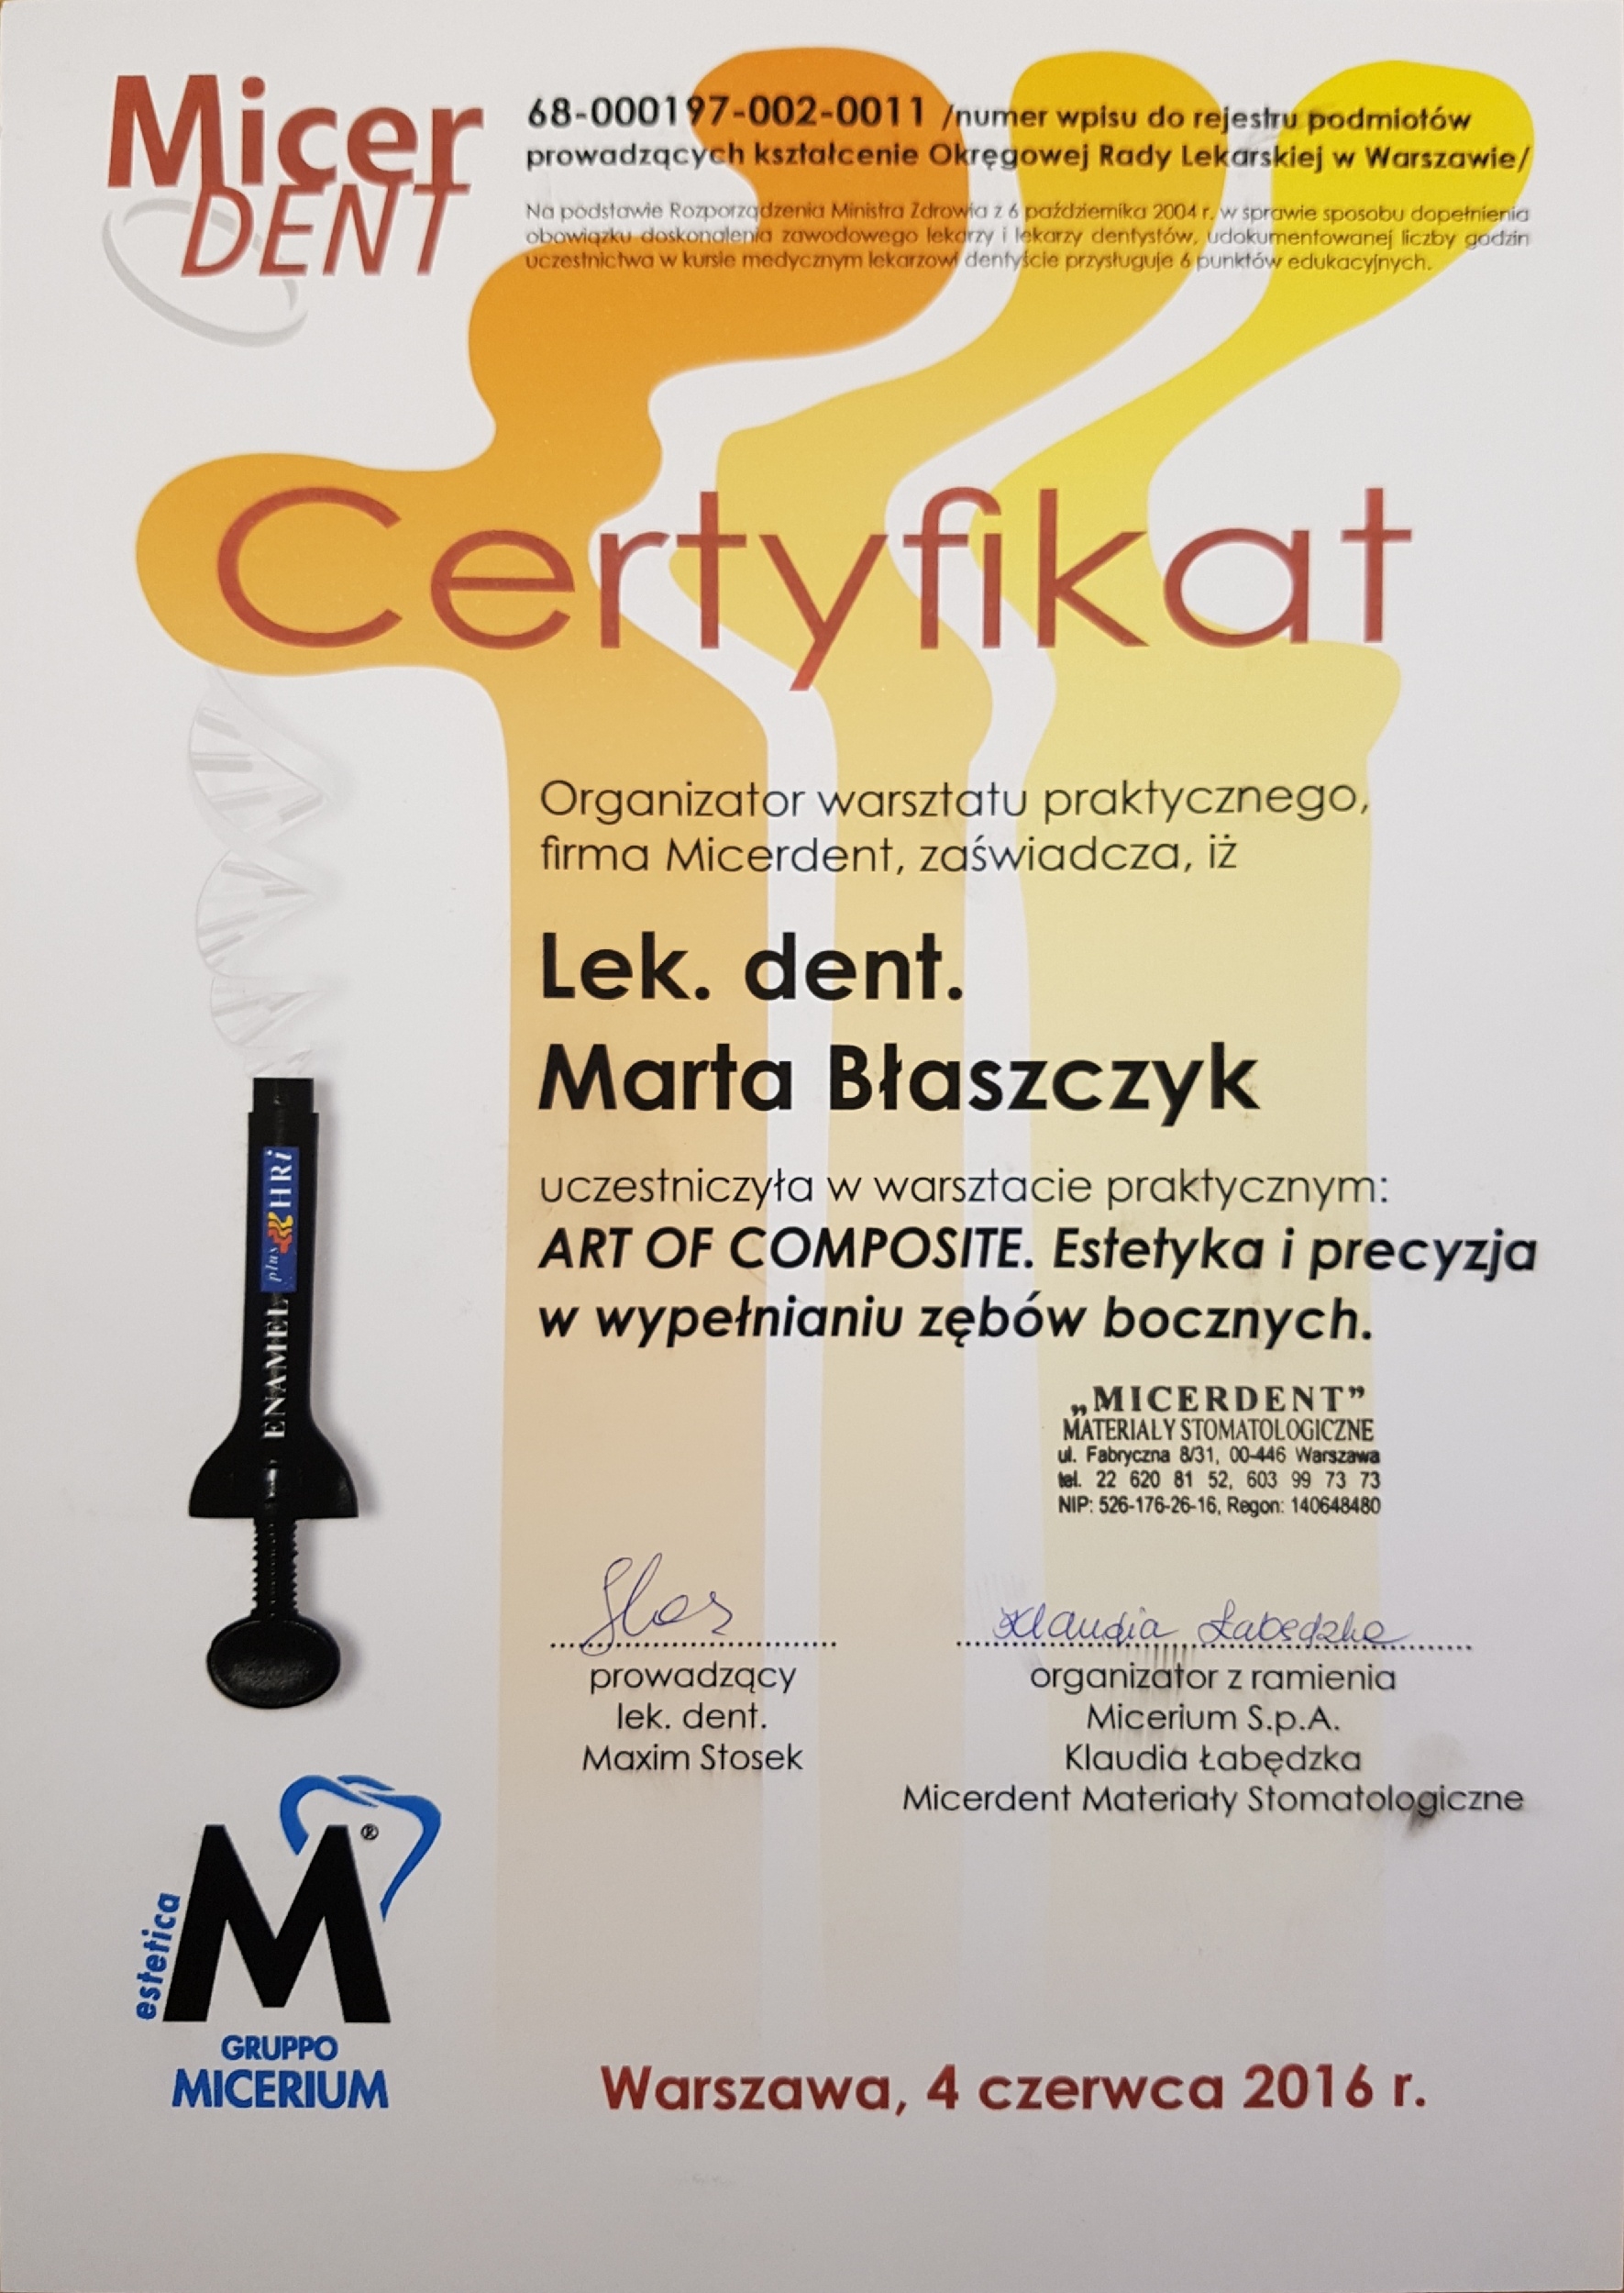 Certyfikaty Dr Marta Błaszczyk Owczarek 2019 14.50.04(2)